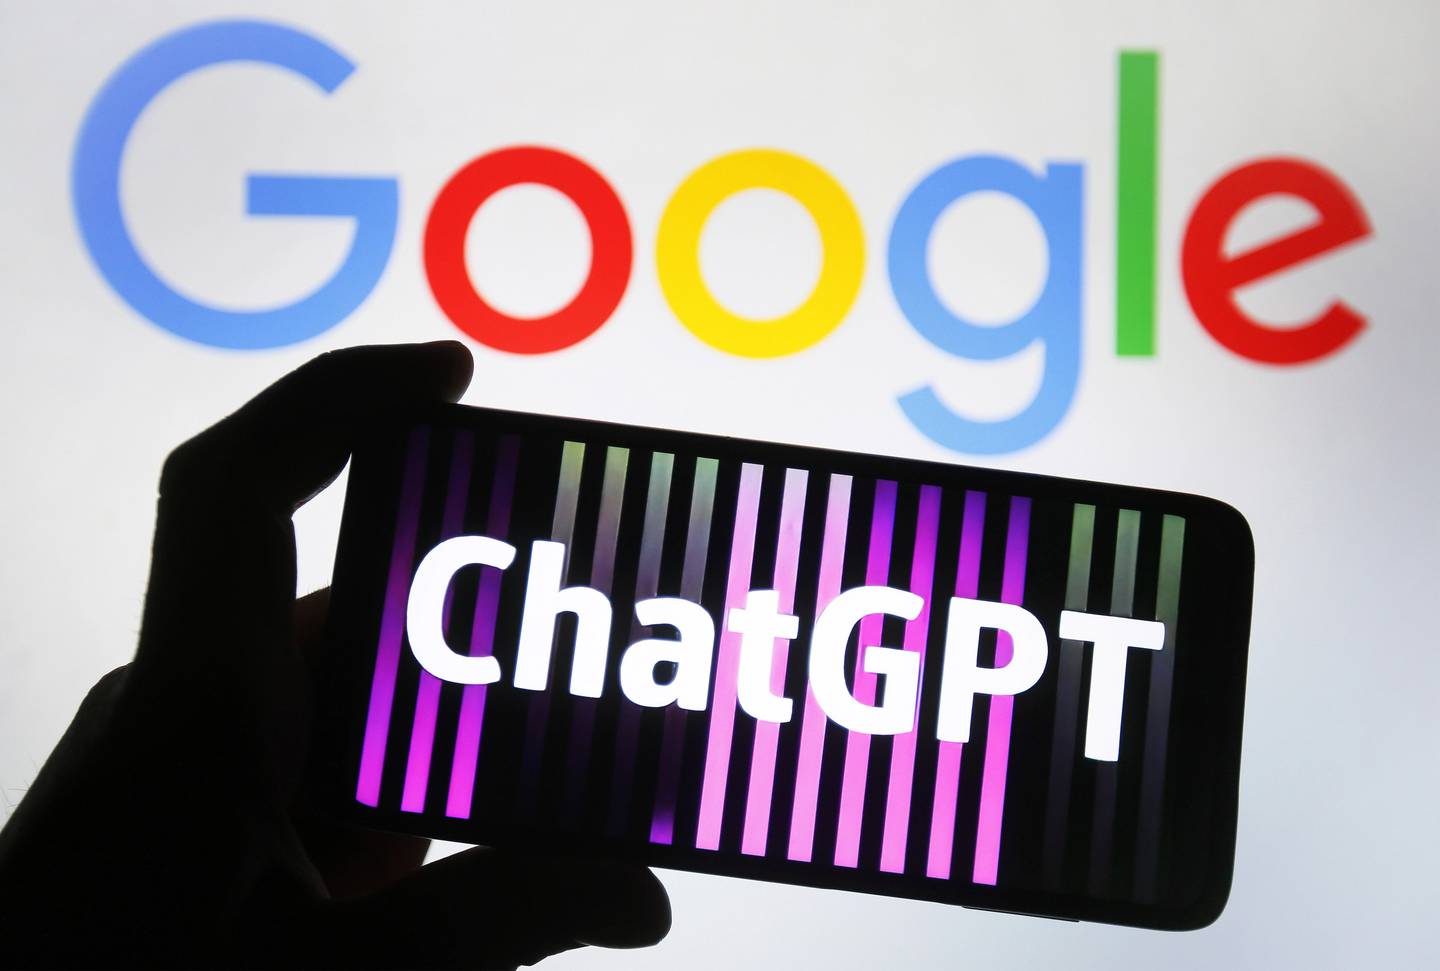 Damos un repaso por los principales puntos que distinguen la Inteligencia Artificial de Google Bard y la de ChatGPT.